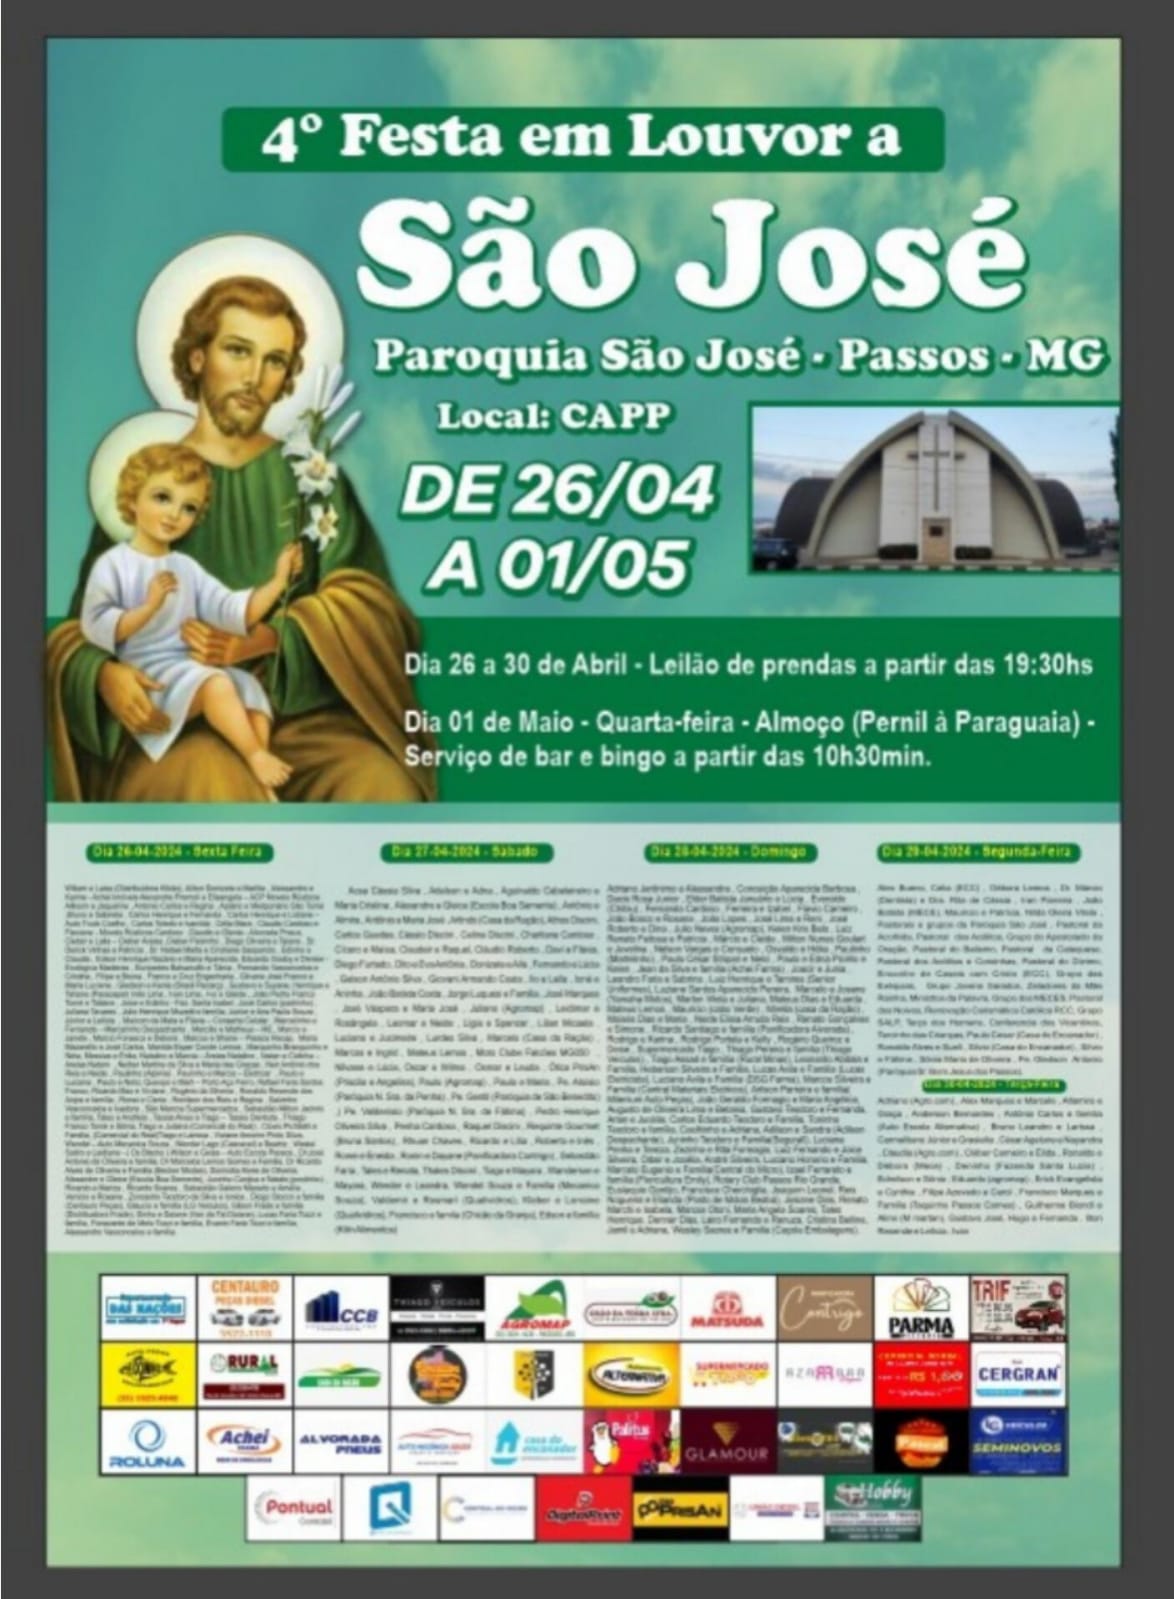 4ª Festa em Louvor a São José - Paróquia São José - Passos MG